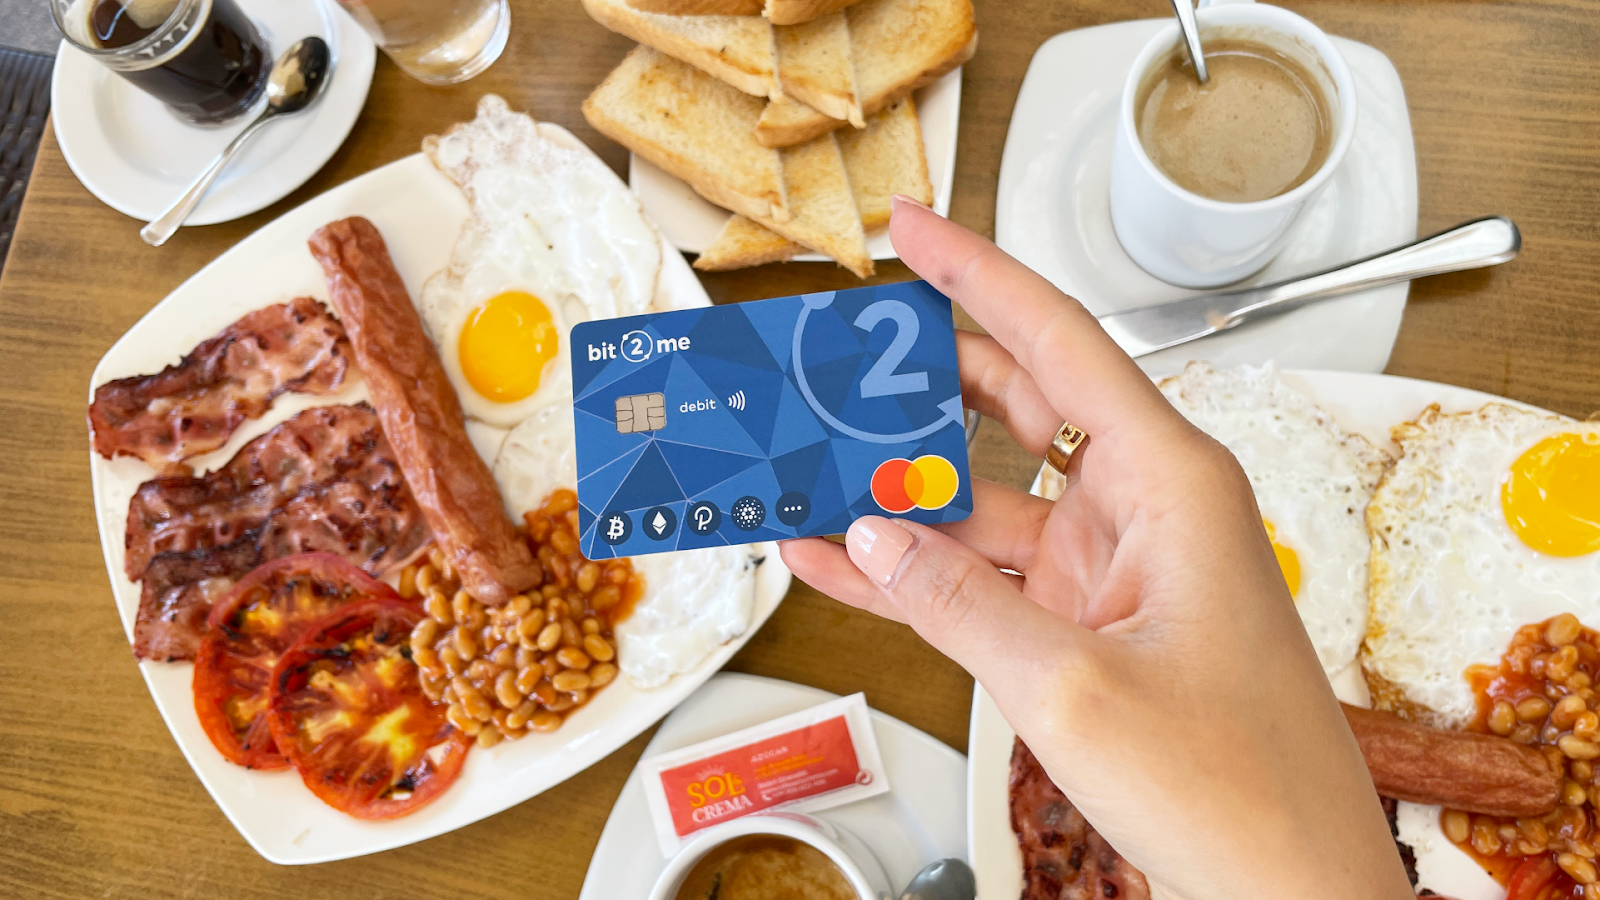 El intercambio español Bit2Me lanza una tarjeta de débito con un programa de reembolso del 9% - 1